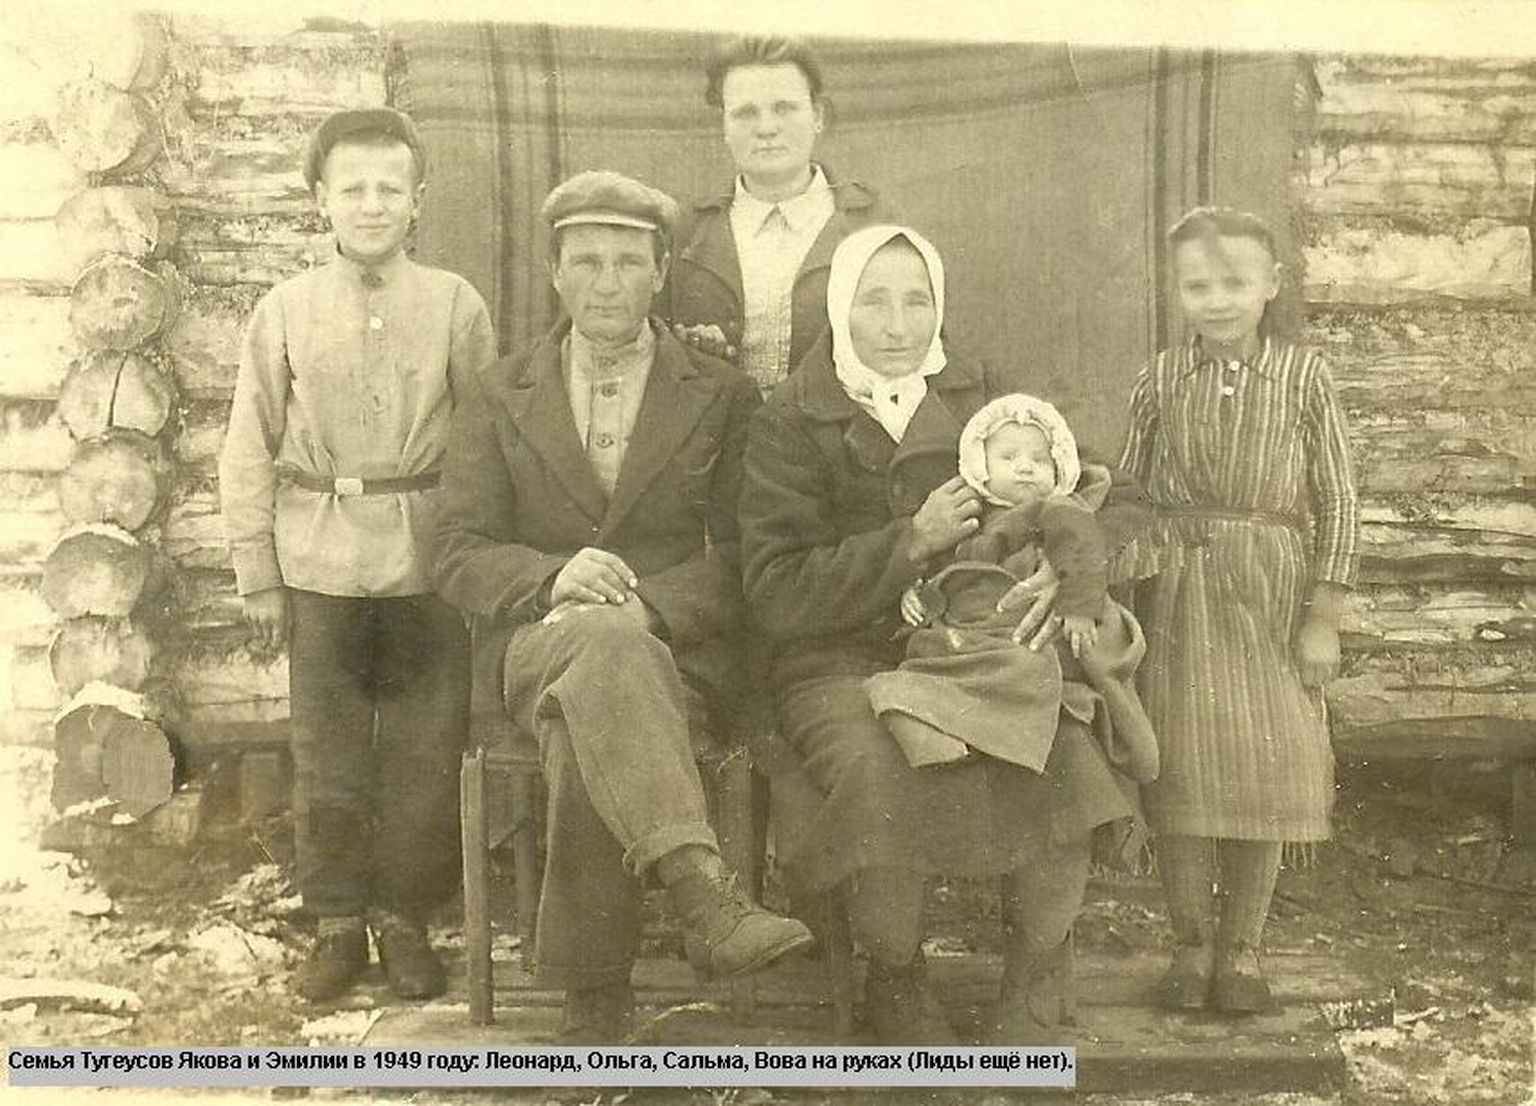 Perefoto 1949. aastast Mihhailovka külas kodumaja ees. Ema Emilie süles istuv Volli on just sündinud. Ema kõrval istub isa Jakob. Vasakul seisab vend Leonhard, keskel õde Olga ja paremalt teine õde Salme.